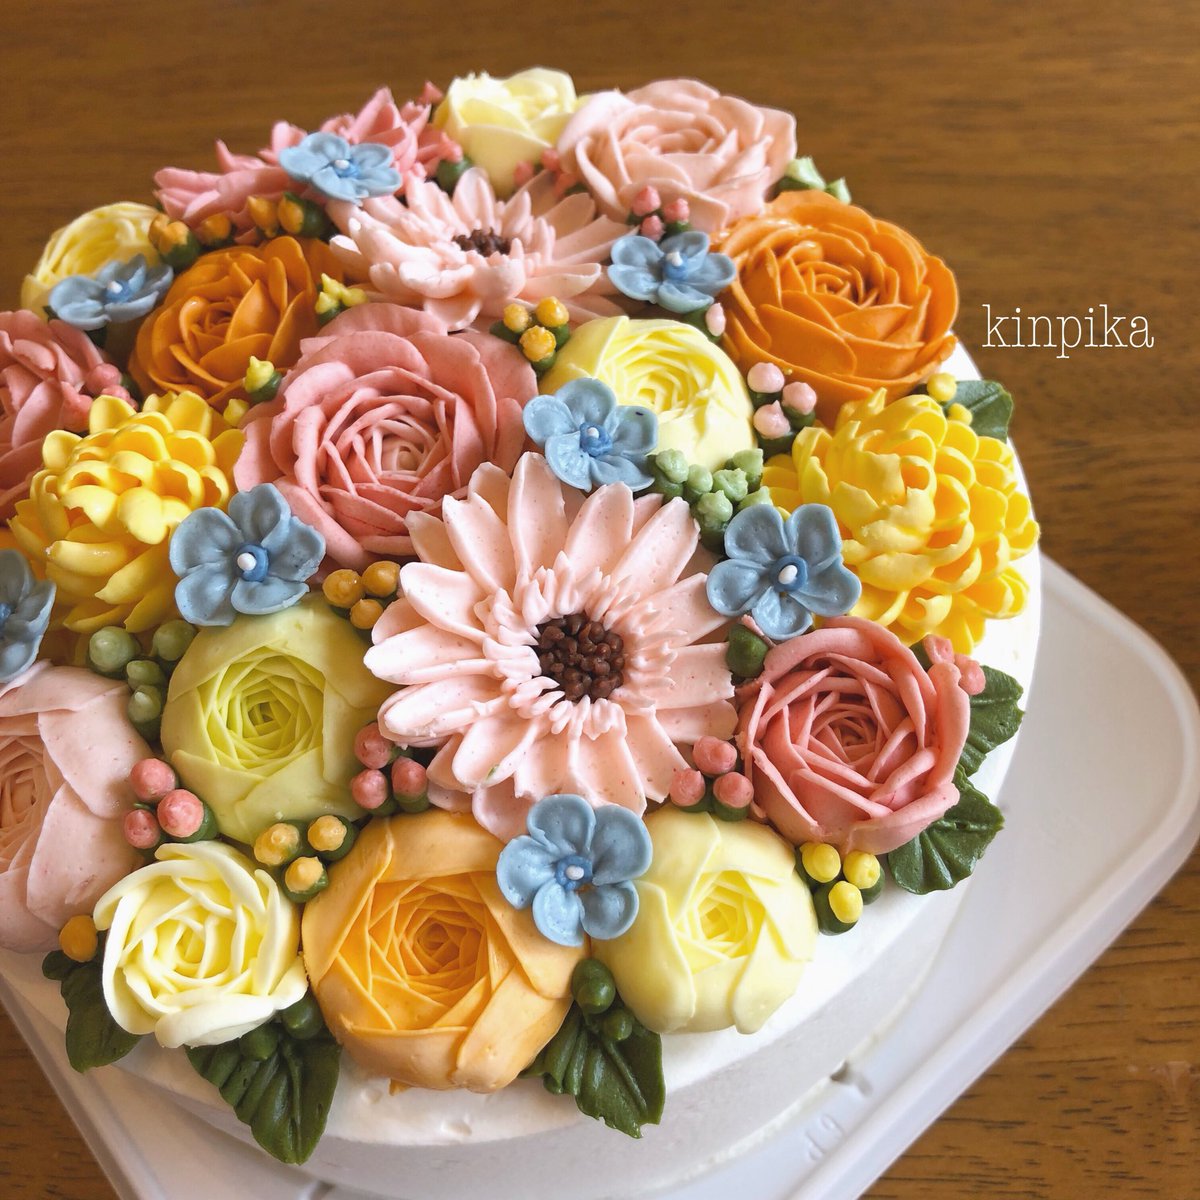 きん ケーキの上いちめんに カラフルなお花を飾った またまたポップなフラワーケーキ カラフルなケーキは見ているだけで元気になります フラワーケーキ 安曇野